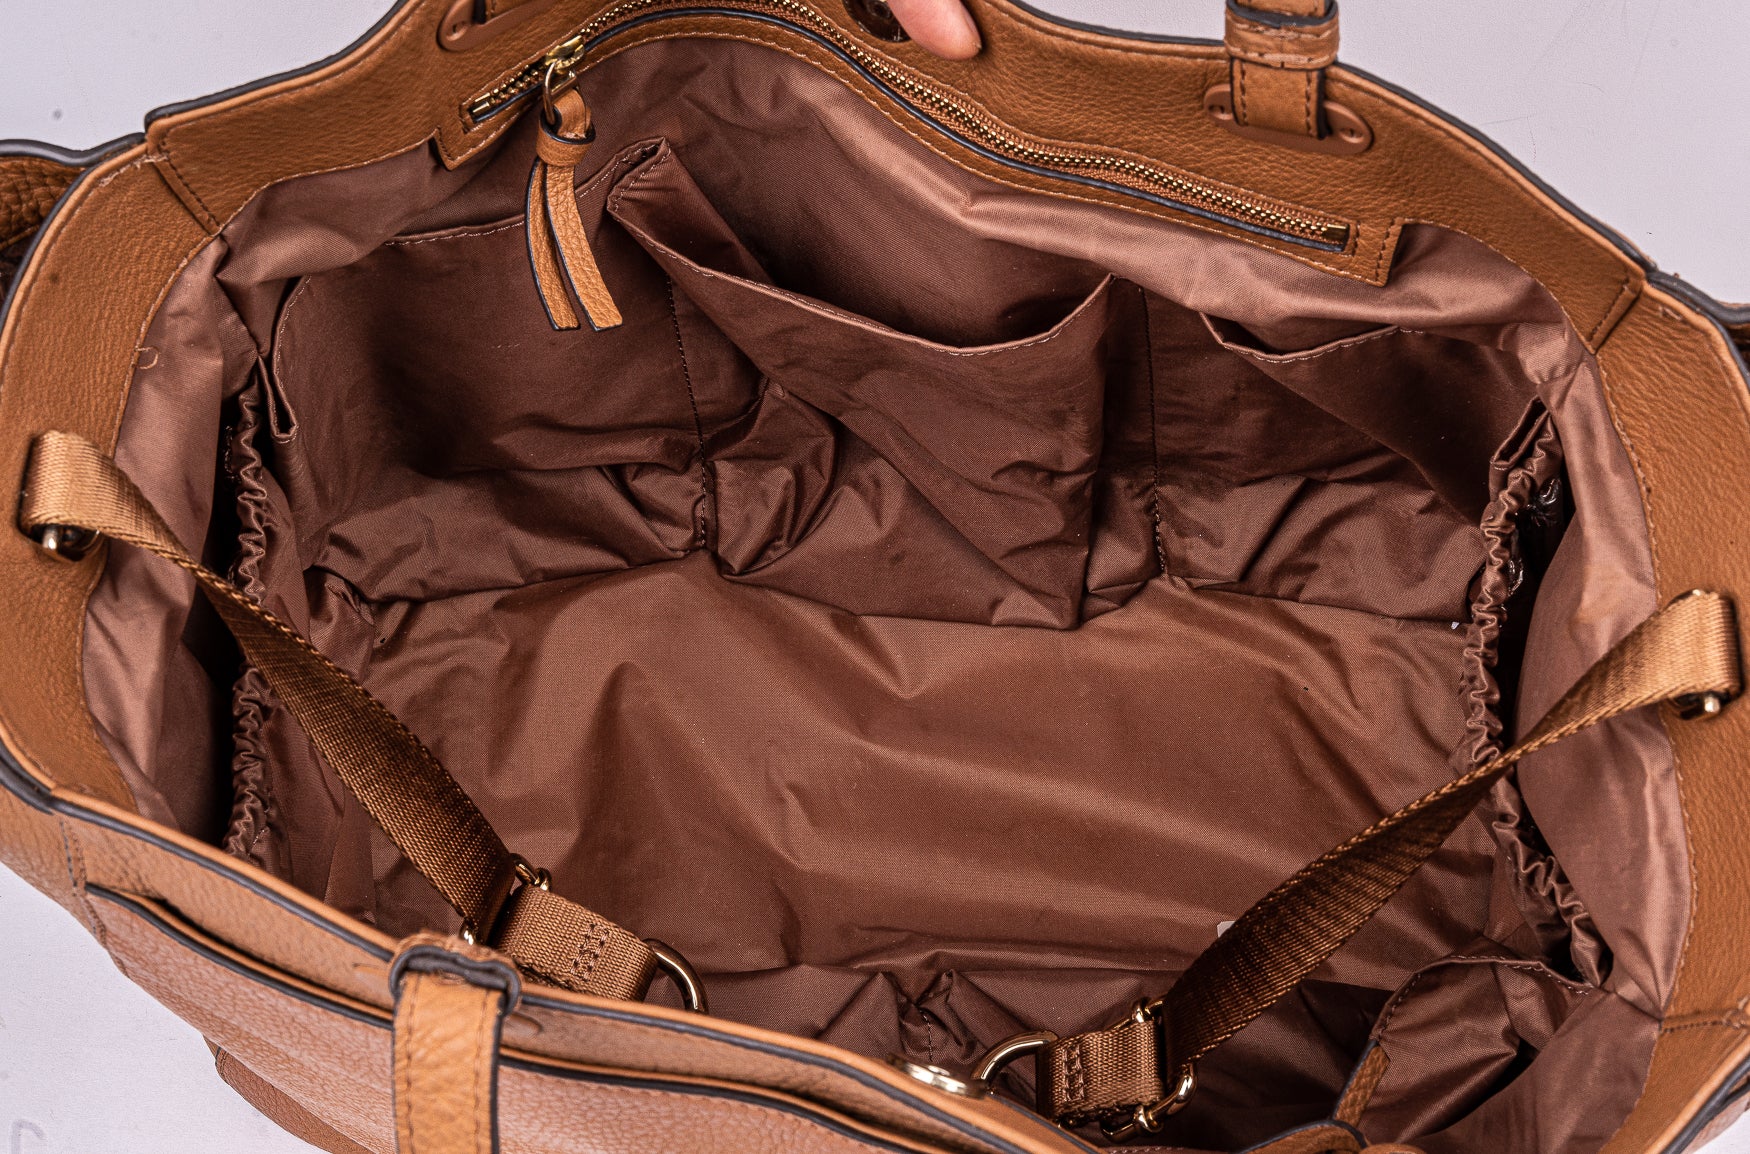 Cognac Leather Diaper Tote Bag